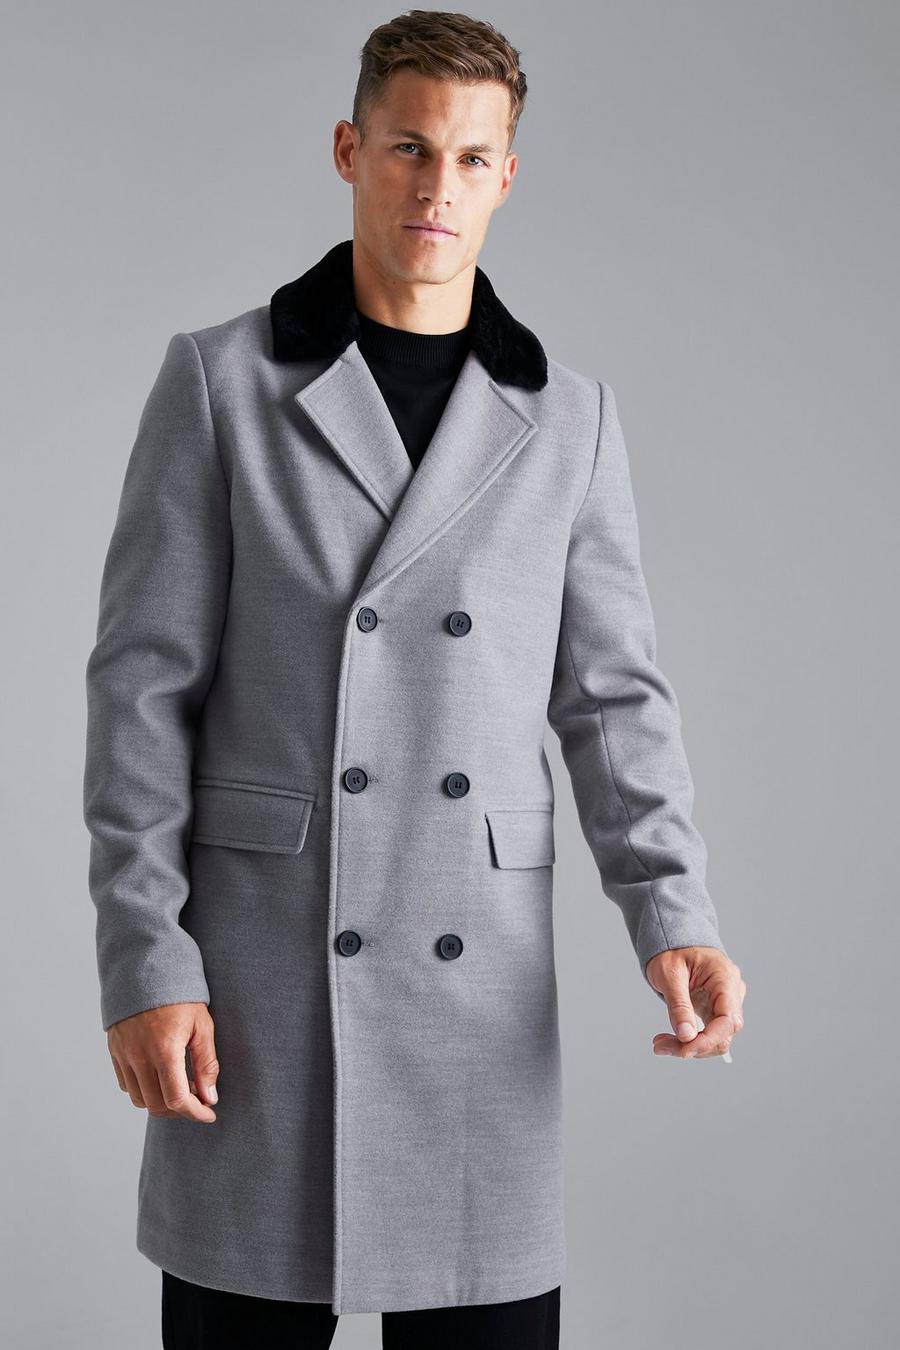 אפור gris מעיל עליון דמוי פרווה עם רכיסה כפולה, לגברים גבוהים